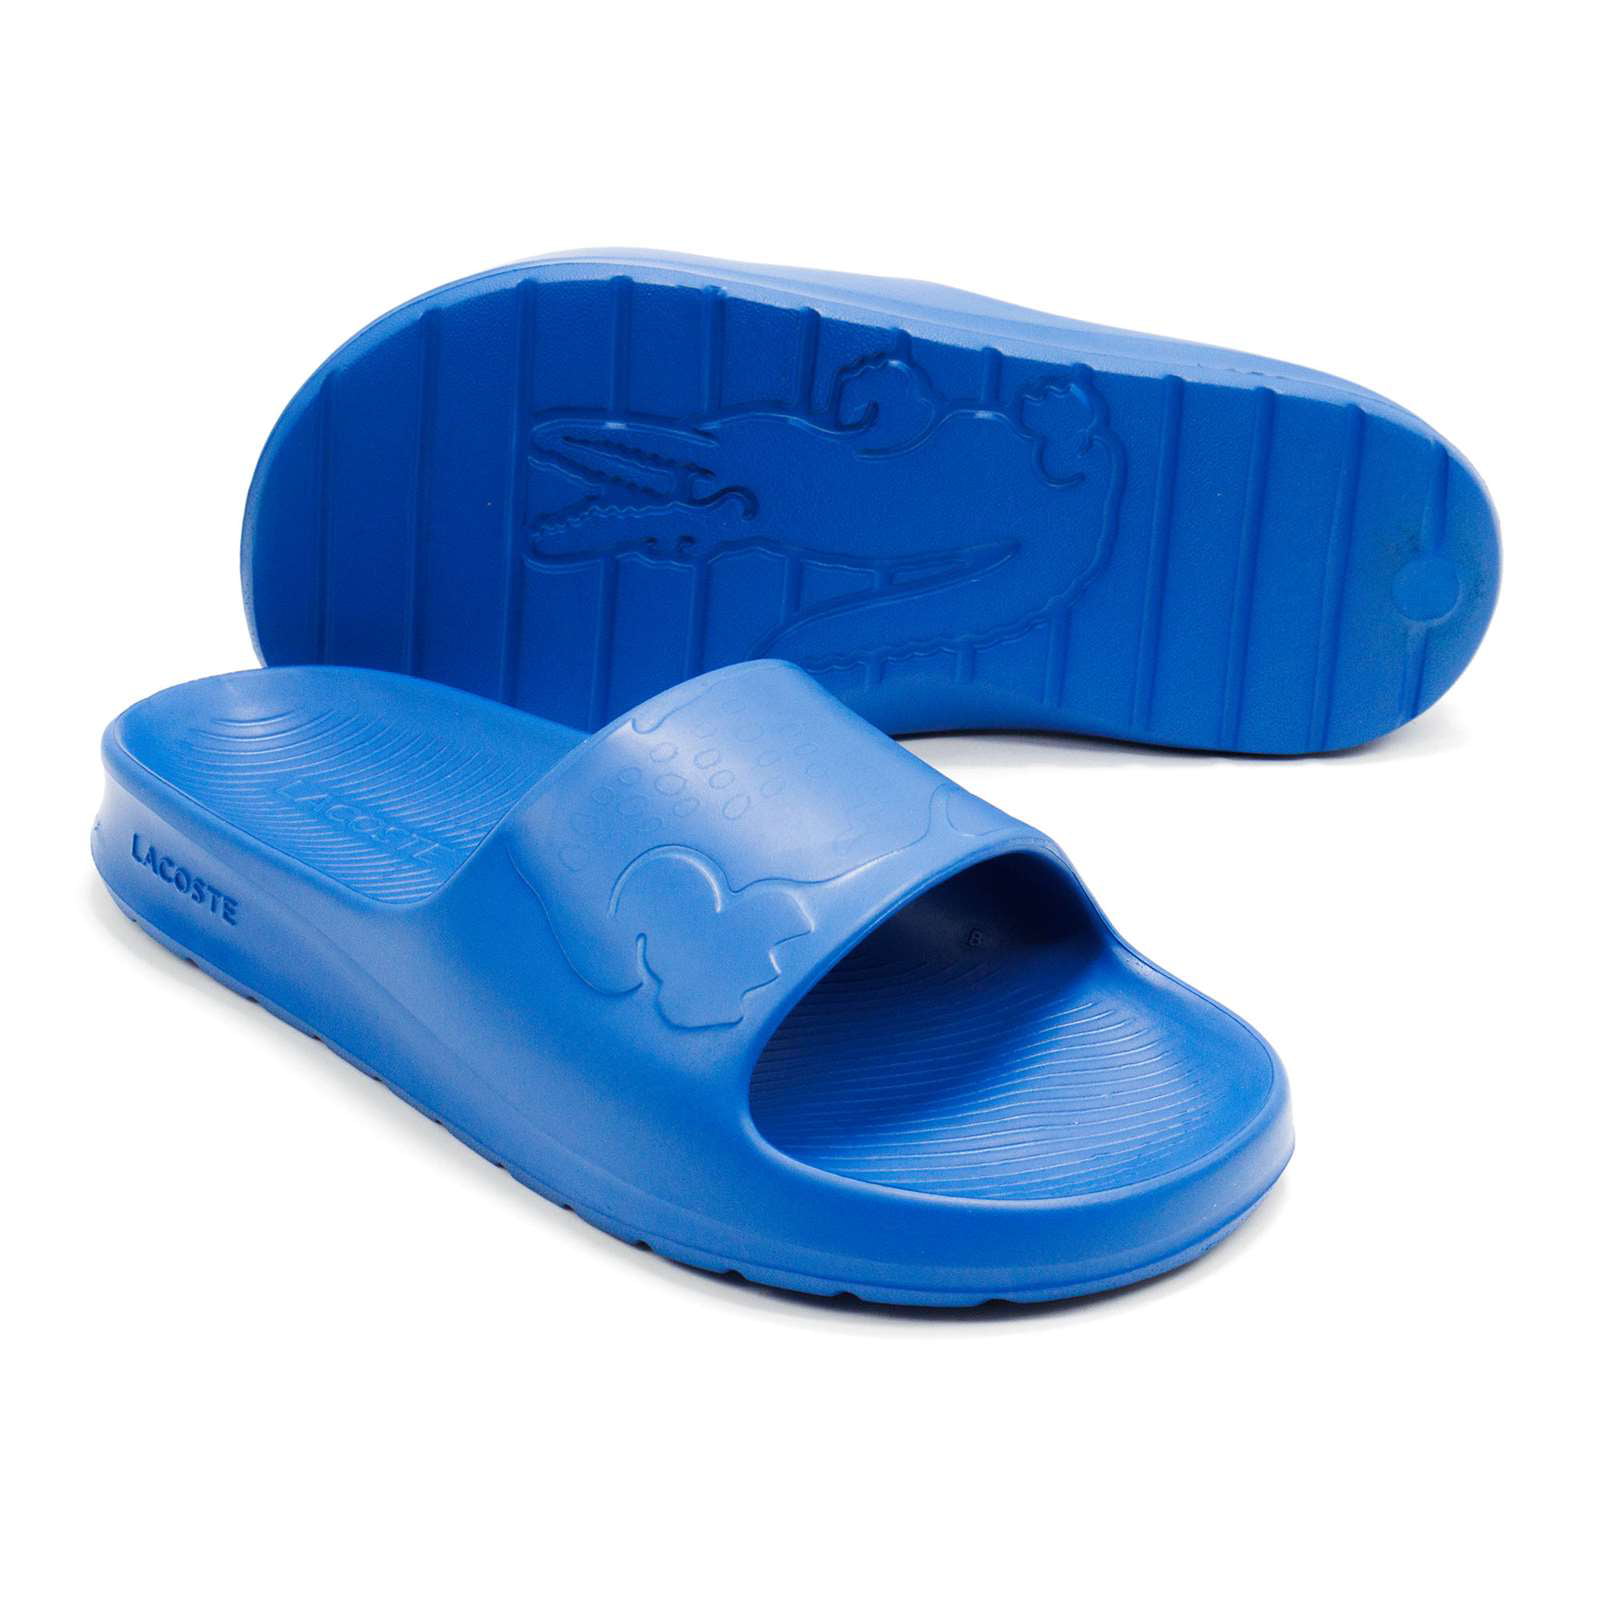 Canberra maling Oversætte Lacoste Men's Croco 2.0 1122 2 Slide Sandals, Blue,12 M US - Walmart.com